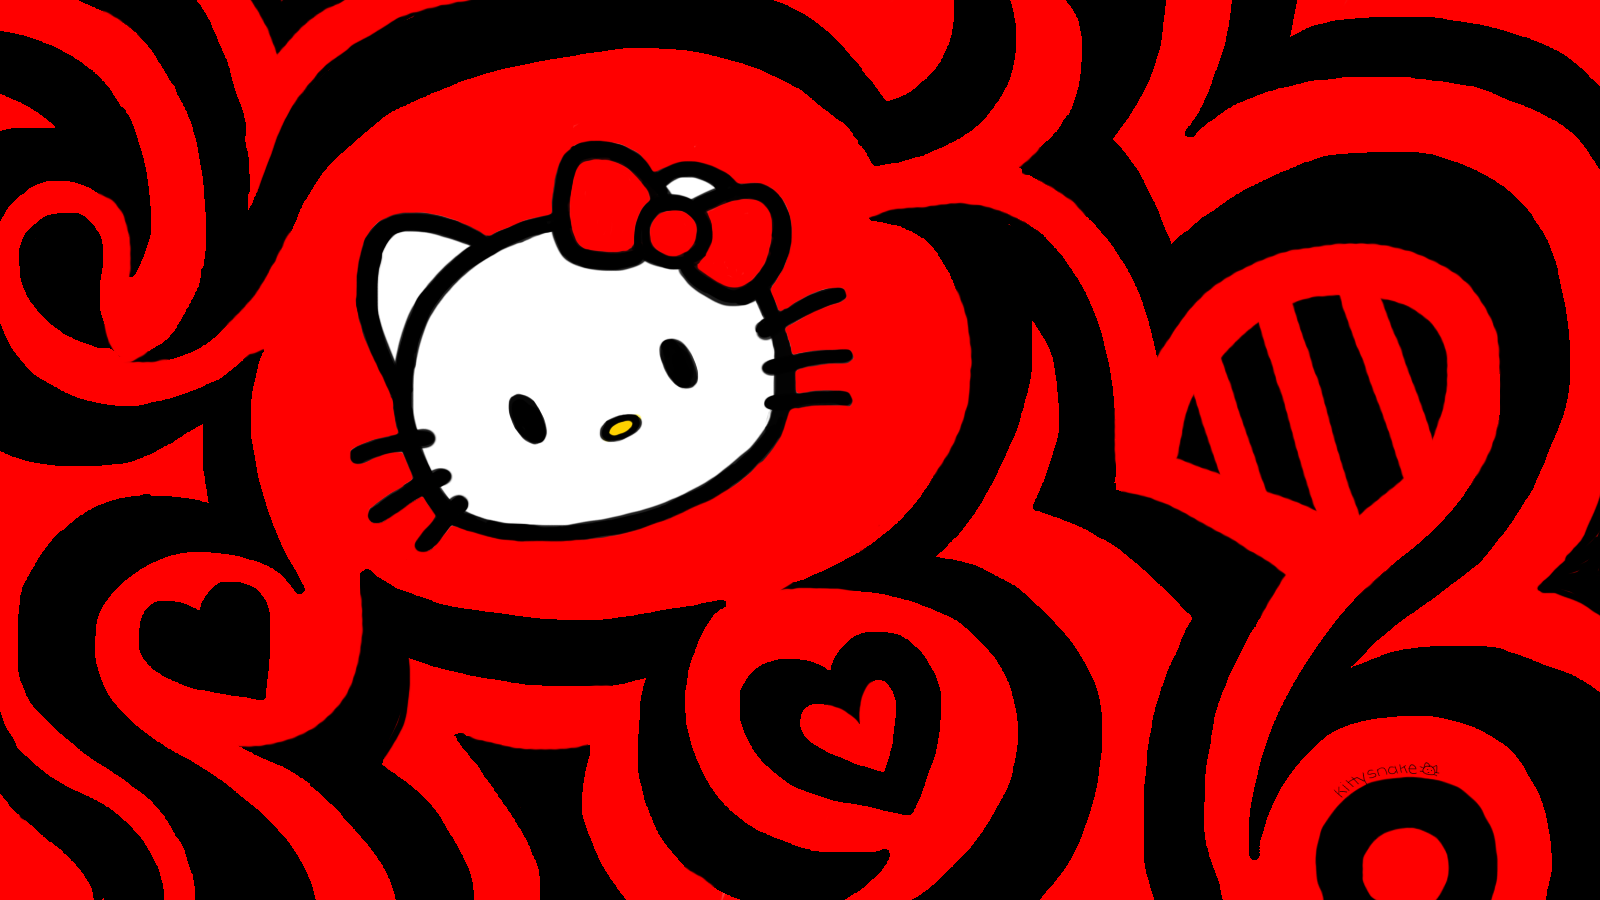 Chào đón Hello Kitty lên màn hình điện thoại của bạn với những hình nền đáng yêu nhất. Sử dụng những mẫu hình nền xinh đẹp với chủ đề Hello Kitty để tạo sự khác biệt và bắt đầu một ngày mới đầy năng lượng.